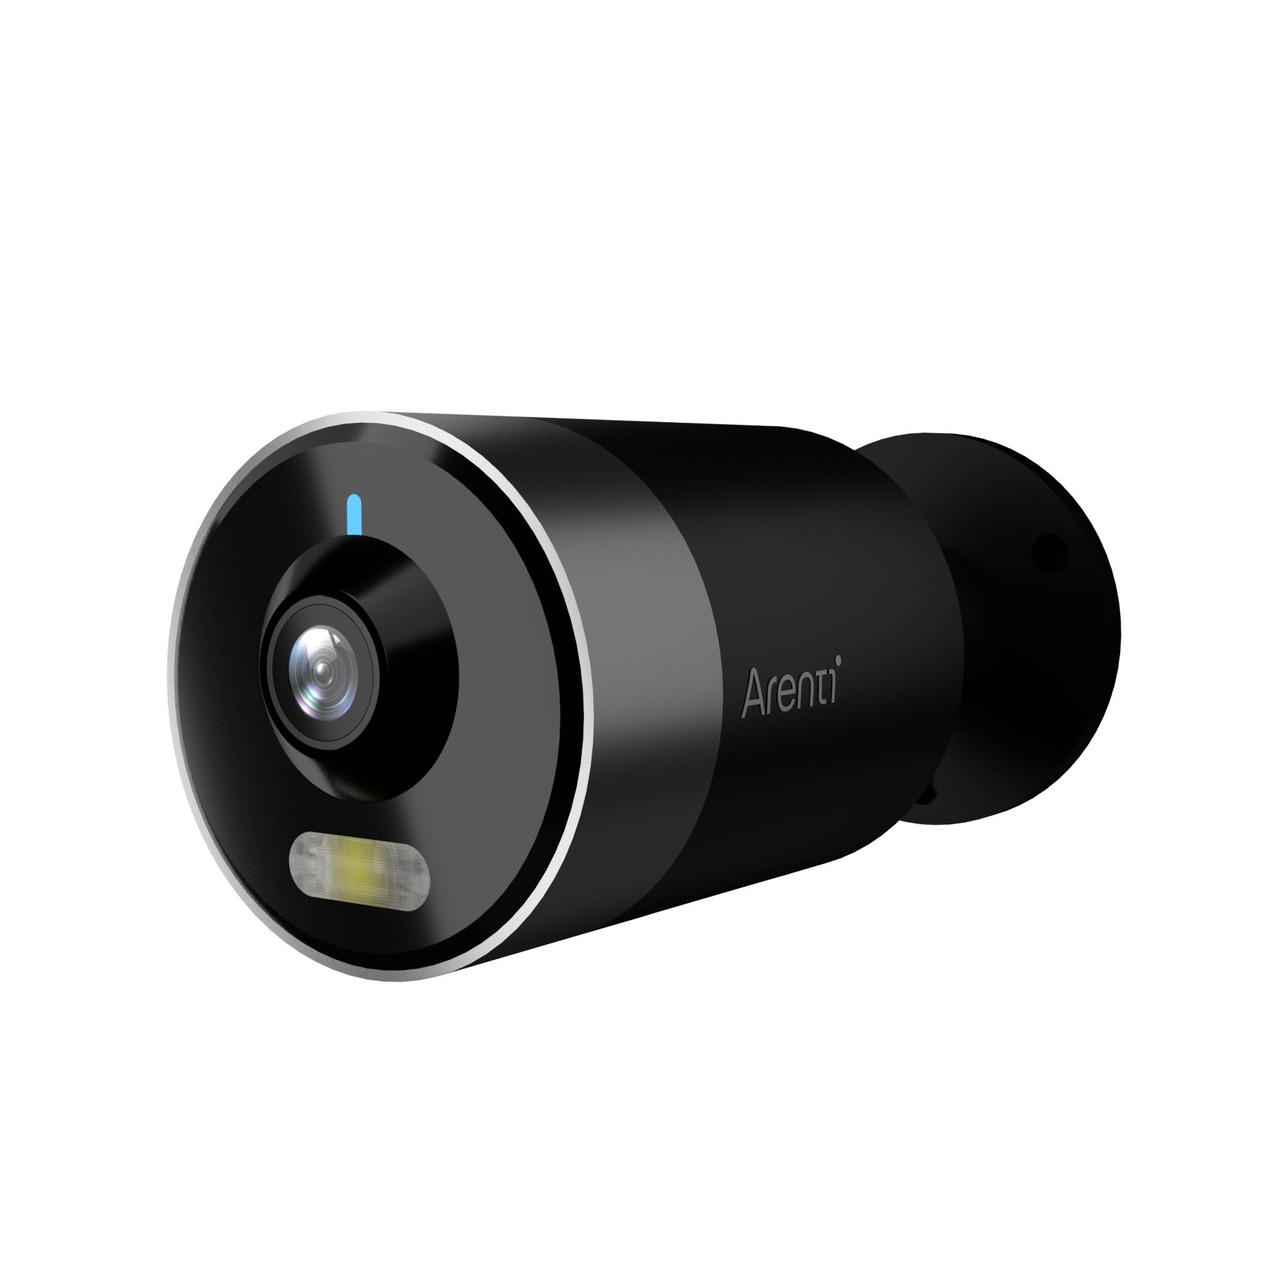 Arenti WLAN-Outdoor-Überwachungskamera OUTDOOR1- 2K-Auflösung- App-Zugriff- Amazon Alexa